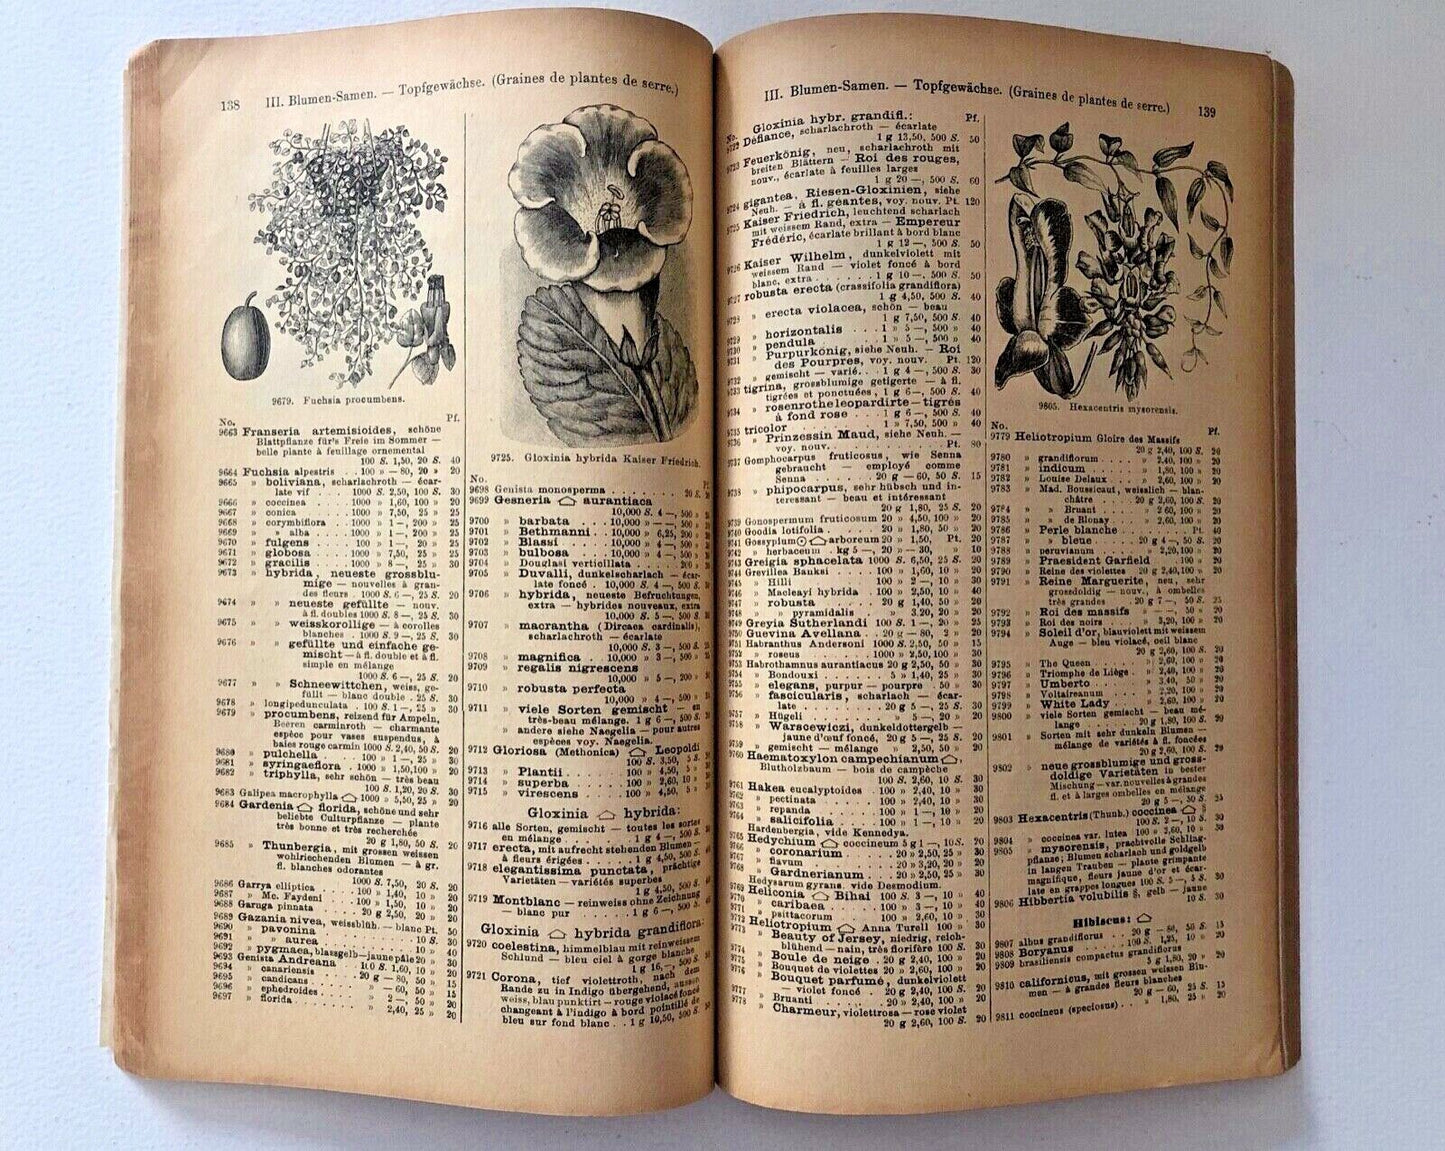 Haage & Schmidt 1897 Haupt-Verzeichniss Samen und Pflanzen